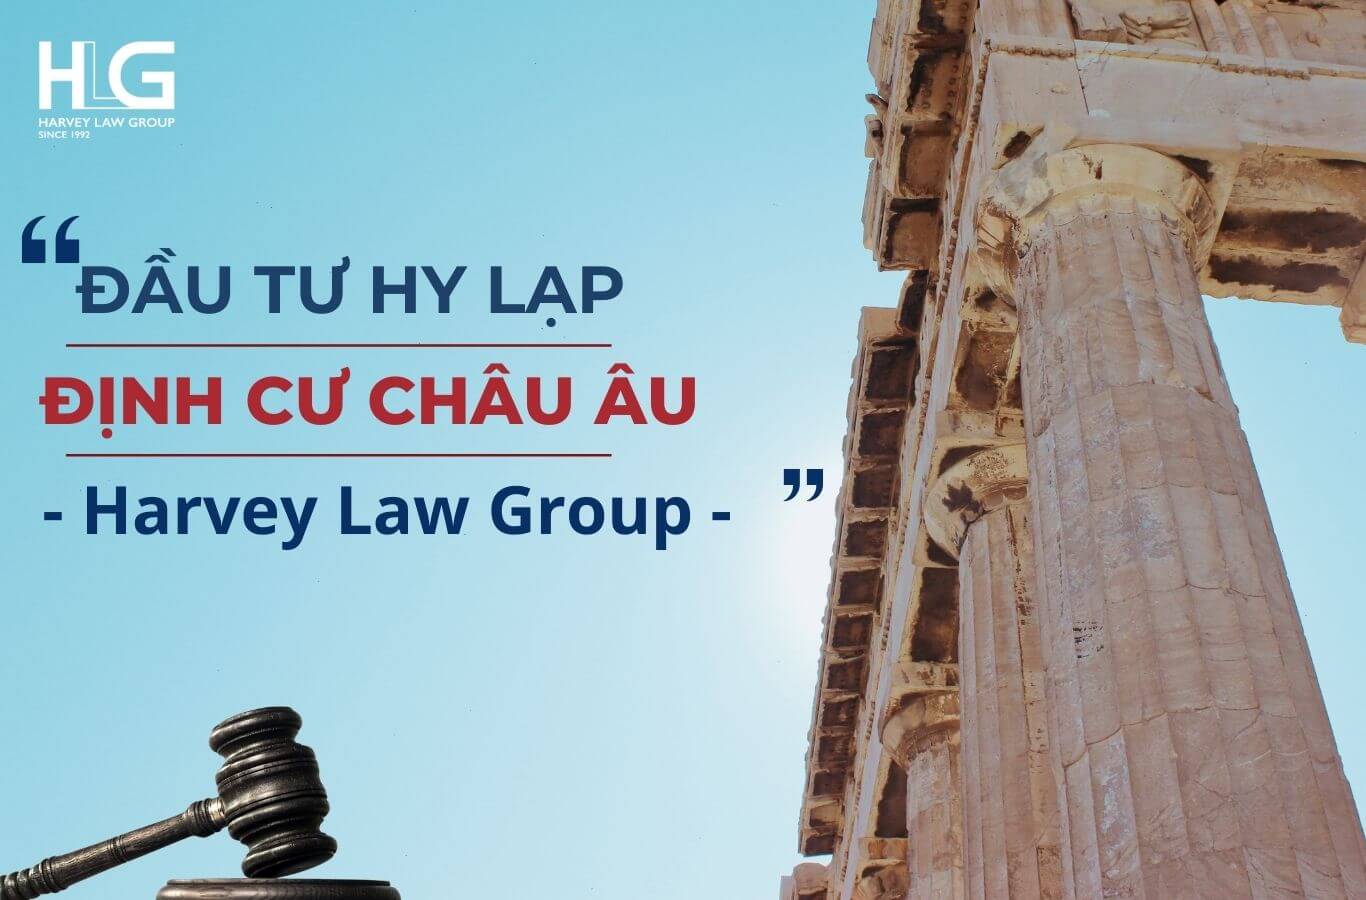 Harvey Law Group cung cấp cho quý khách hàng chương trình đầu tư định cư Hy Lạp uy tín